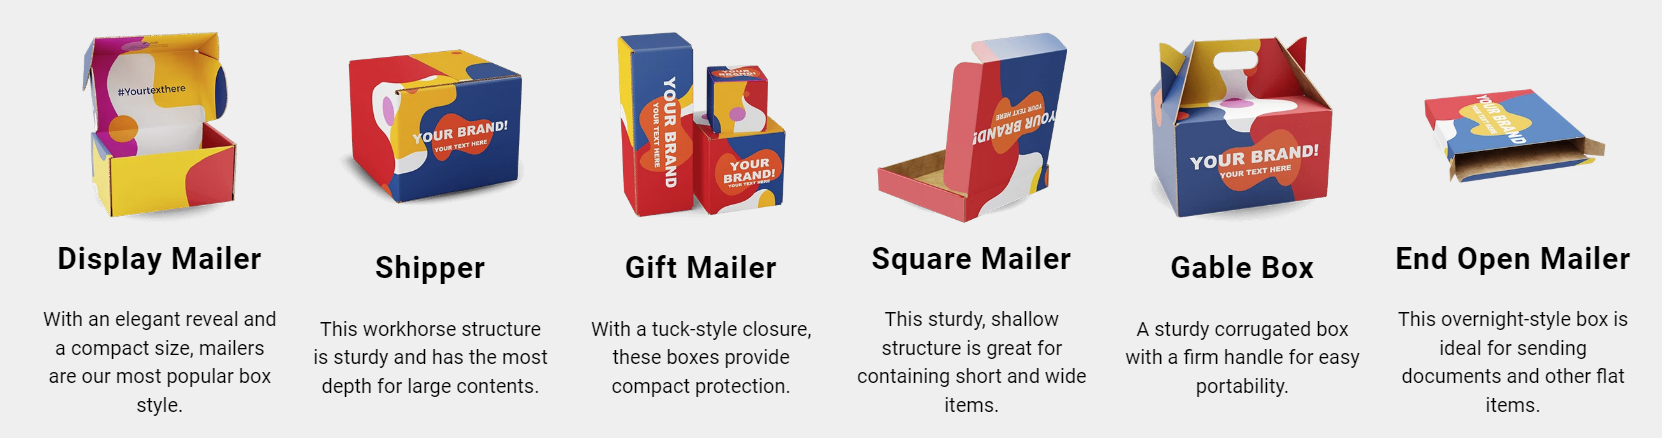 custom branded mailer box options